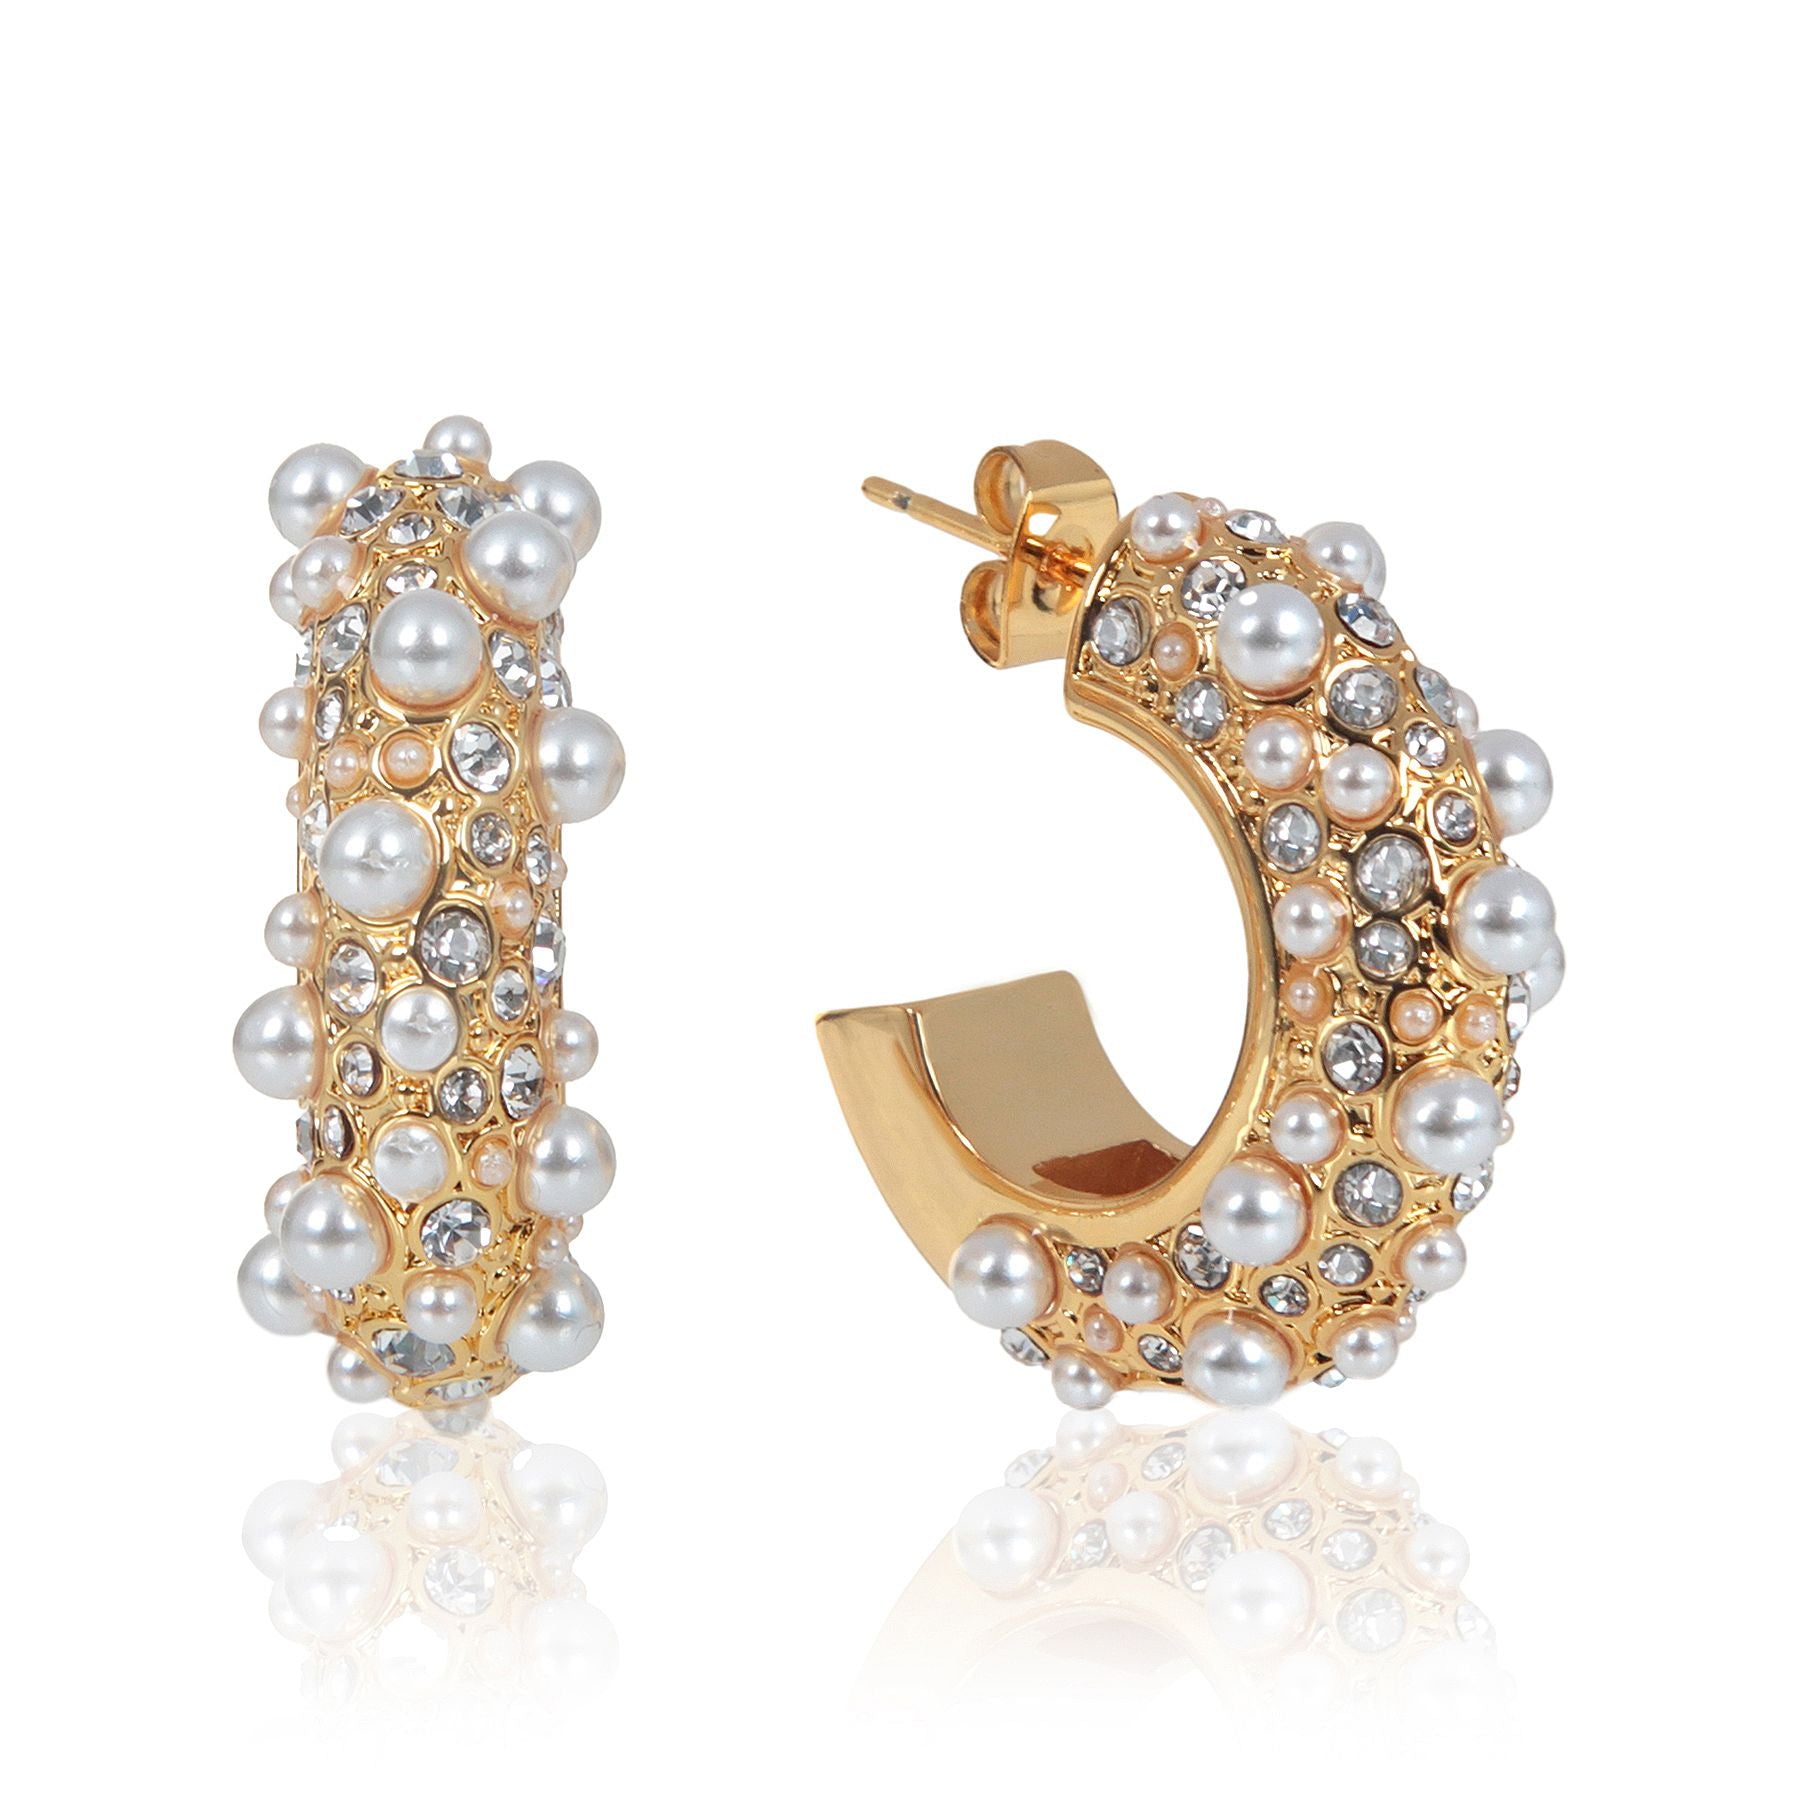 Pearl hoop, gold hoop, gold earrings, pearl earrings, gold pearl earrings, wedding earrings, holiday earrings, trendy earrings, gold pearl hoop